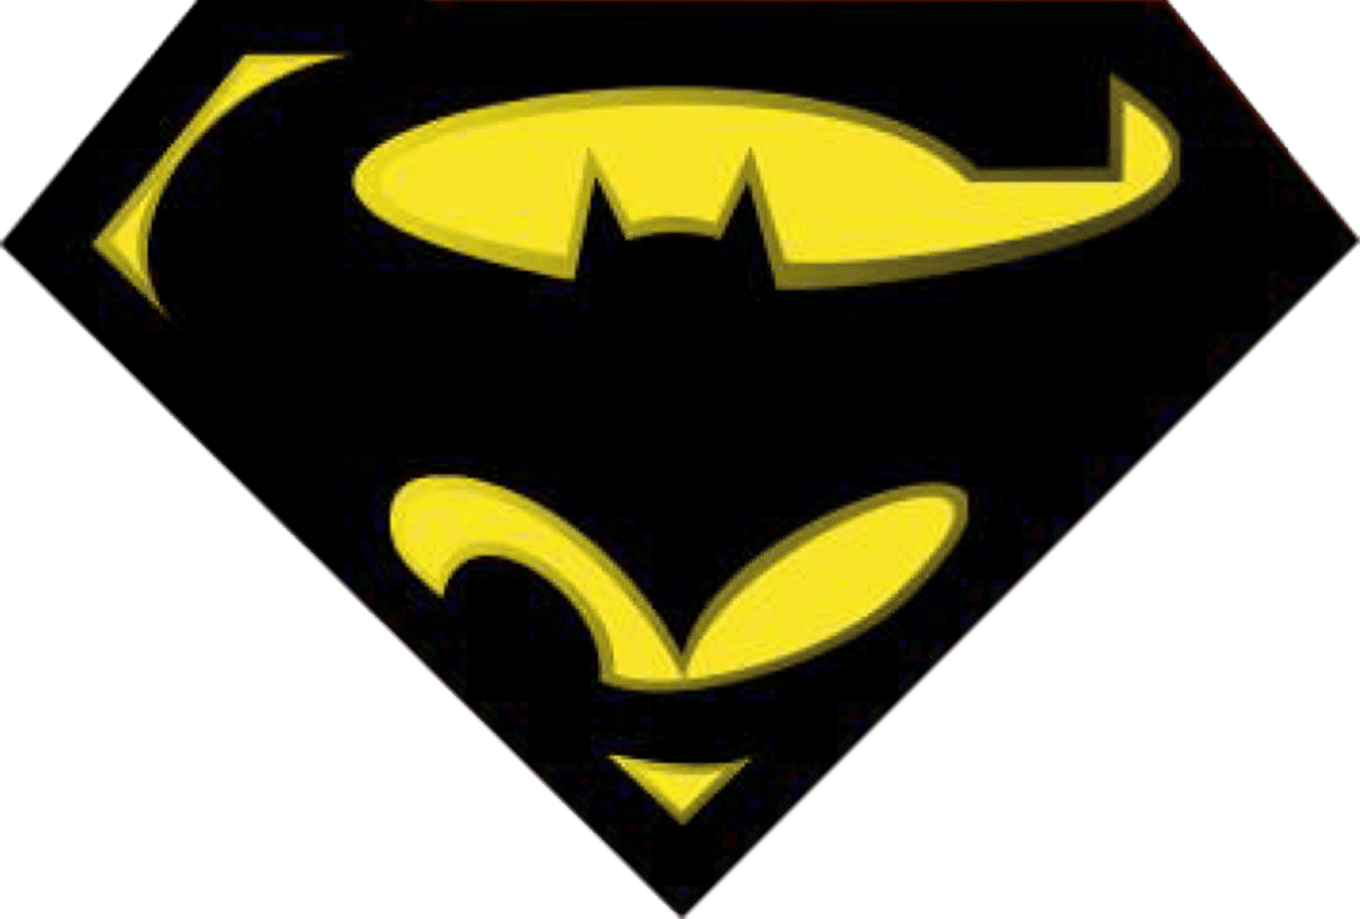 Batman Superman logo symbol